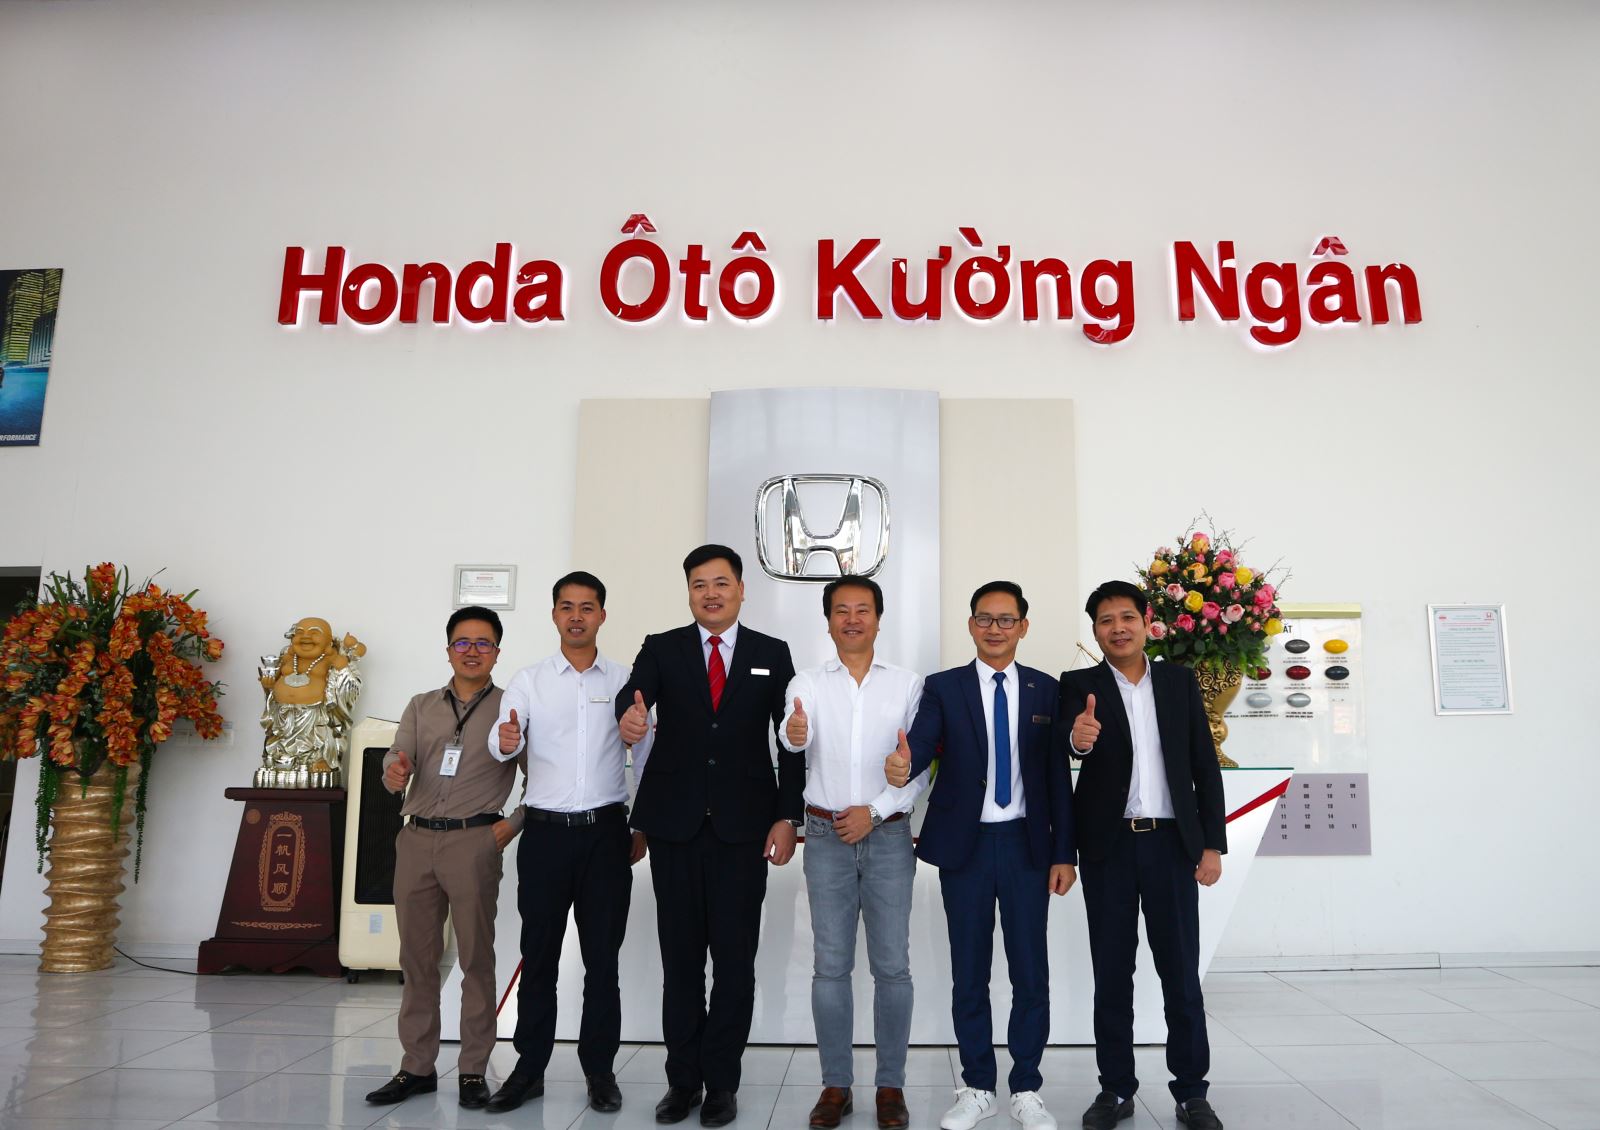 Chào mừng ông Daiki Mihara - Tổng giám đốc Honda Việt Nam về thăm và làm việc tại hệ thống Honda Kường Ngân Thái Bình